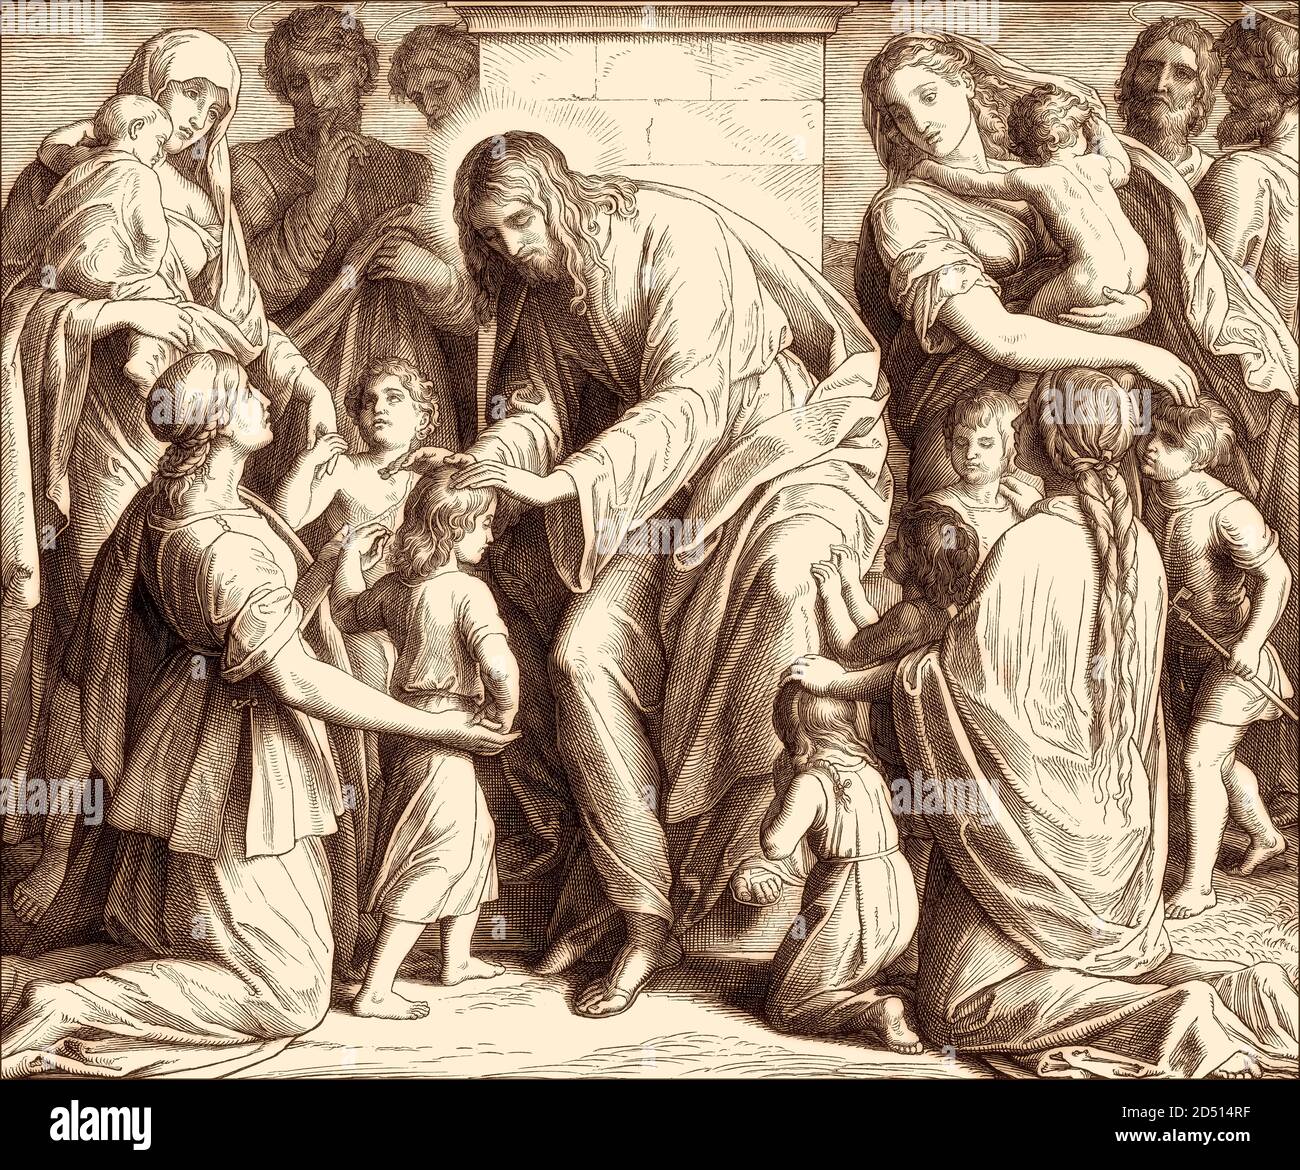 Jesus' teachings referring to little children, New Testament, by Julius Schnorr von Carolsfeld, 1860 Stock Photo